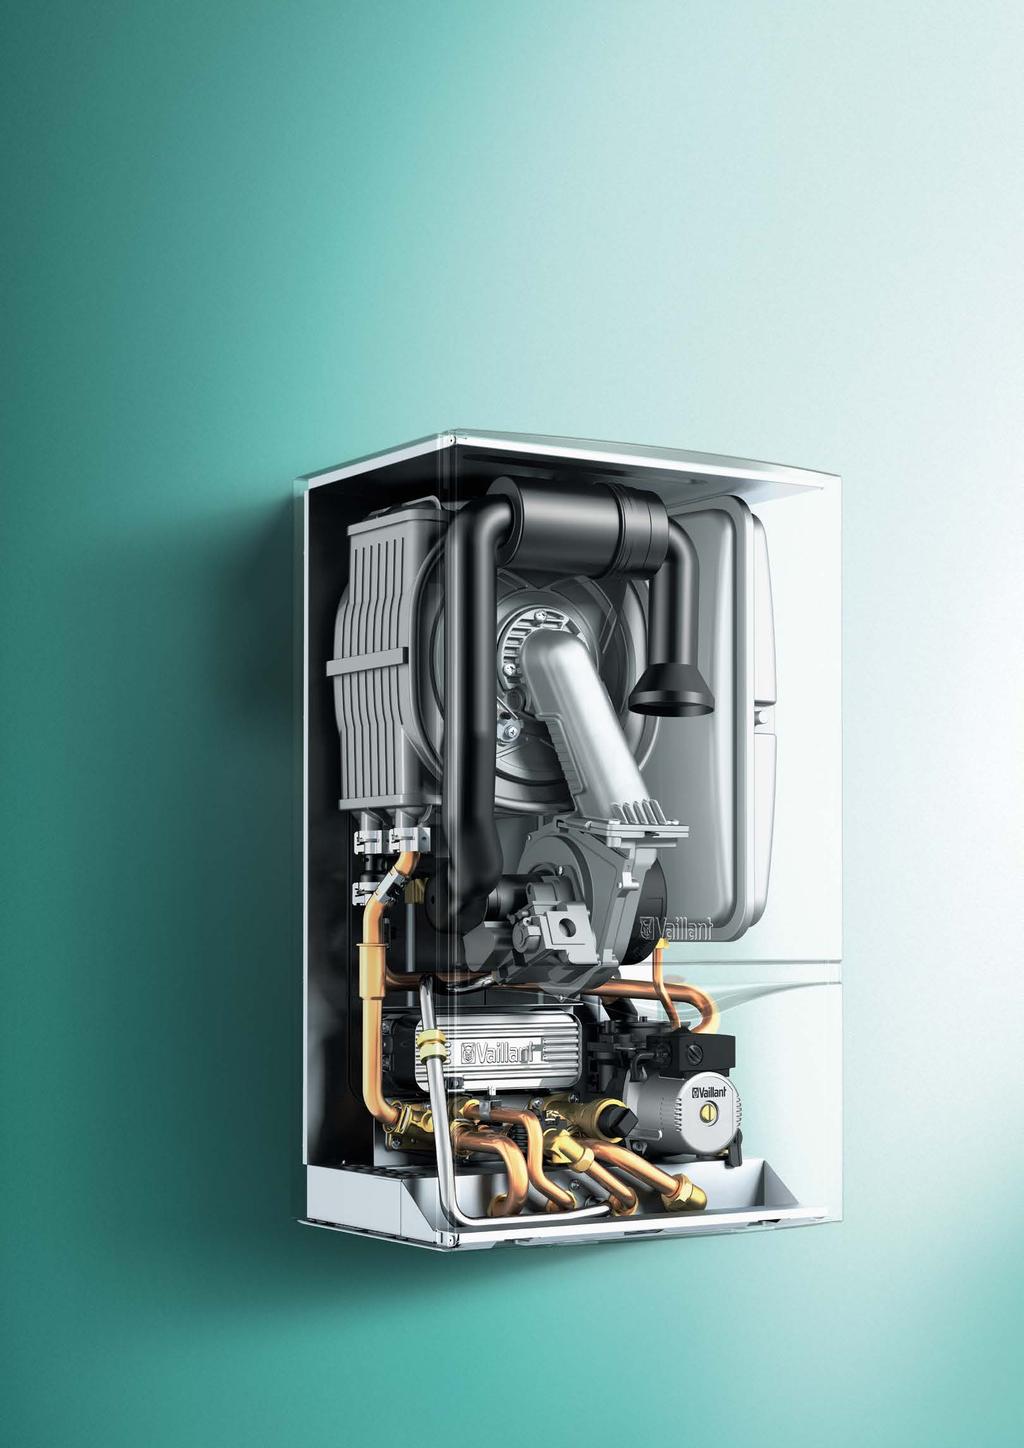 Kocioł kondensacyjny ecotec plus klasa sama w sobie Innowacyjny wymiennik ciepła pozwala do minimum ograniczyć straty ciepła i emisję hałasu, przy jednoczesnym obniżeniu oporów przepływu.